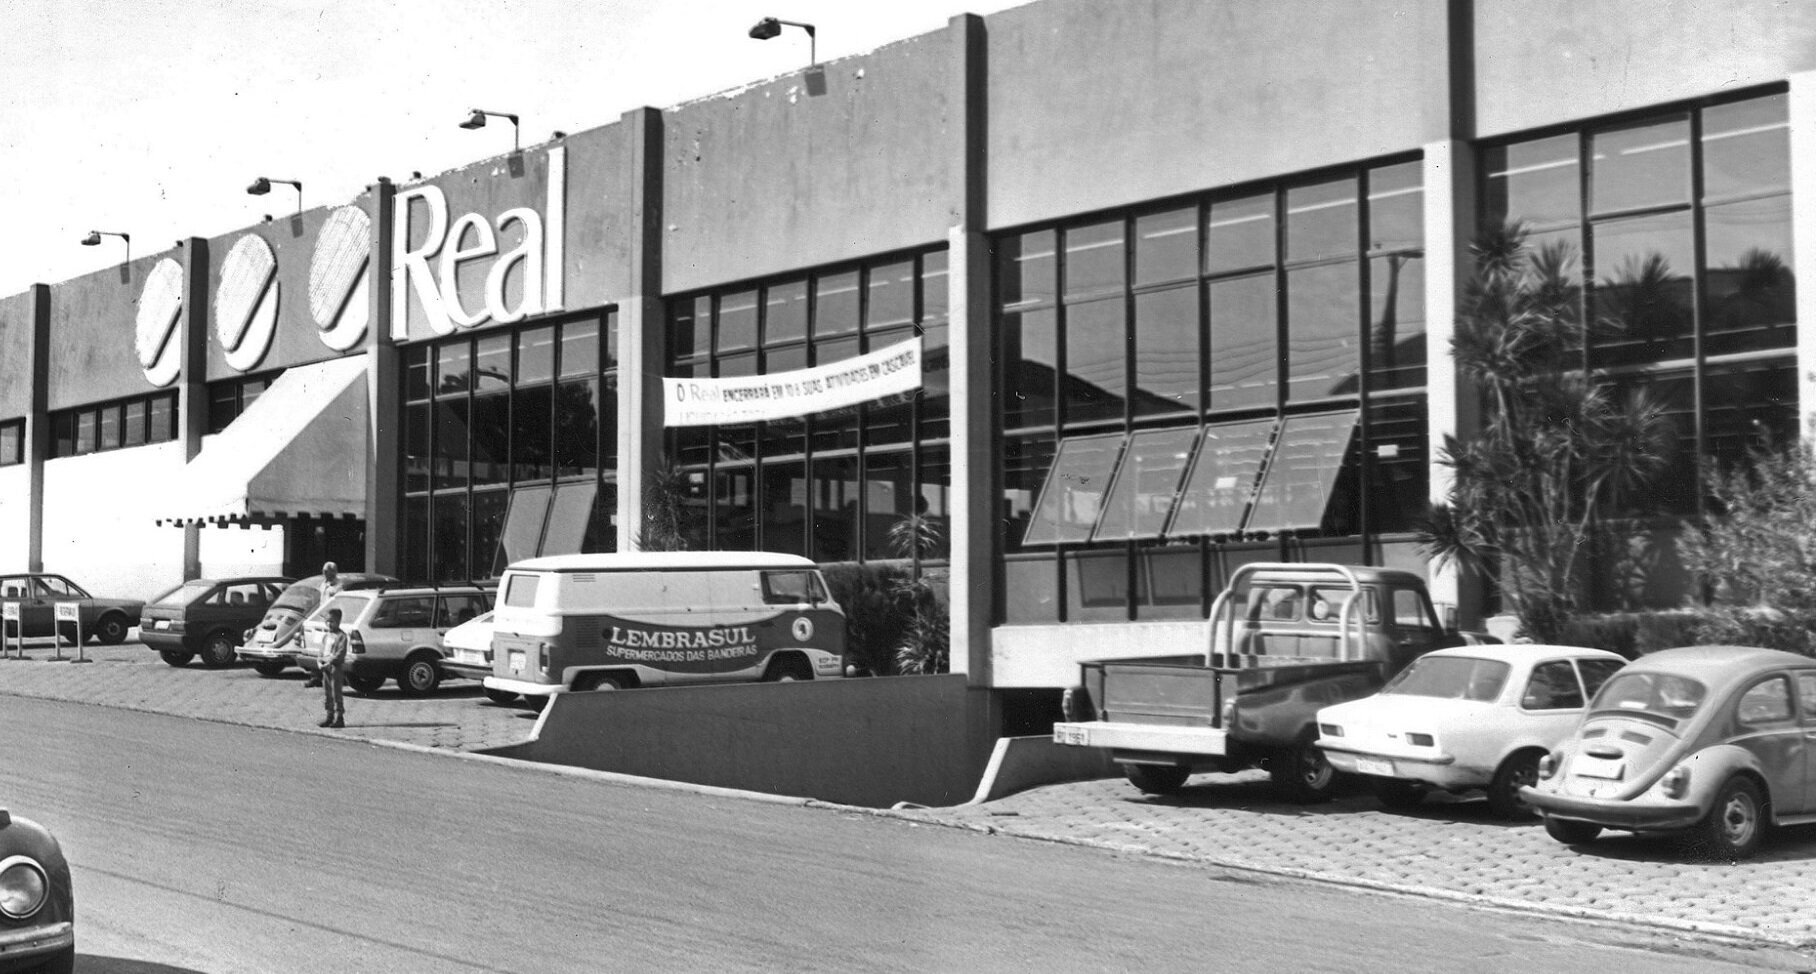 Supermercados Real, em Cascavel - Década de 1970